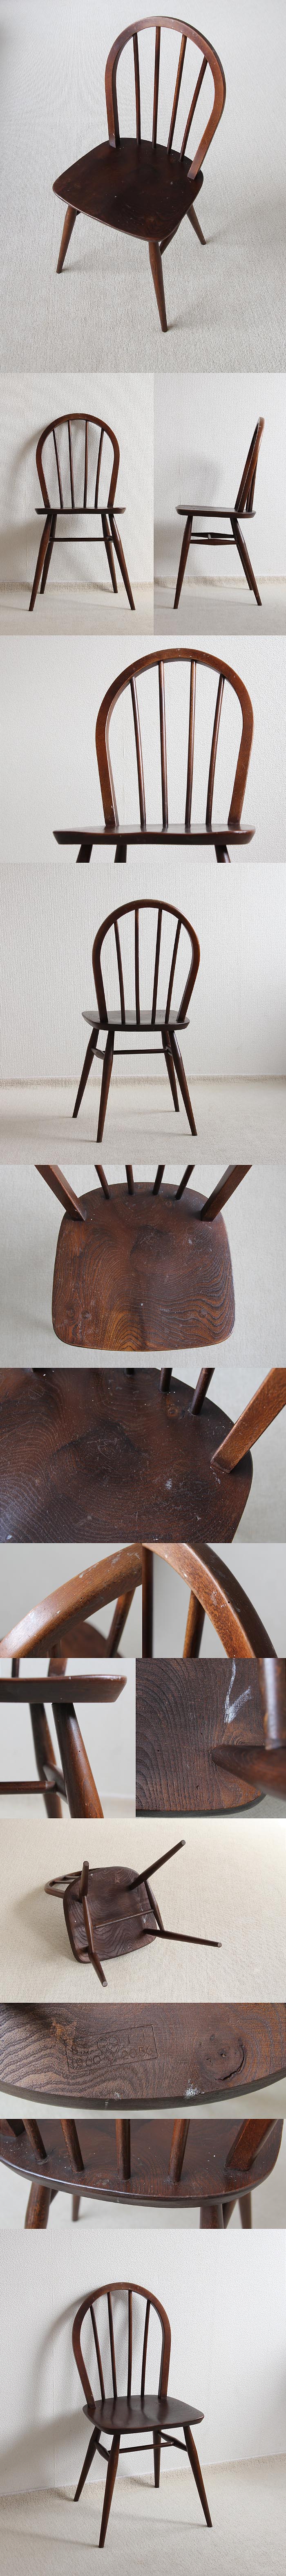 イギリス アンティーク アーコールチェア 木製椅子 ERCOL ヴィンテージ 家具 「フープバックチェア」V-698